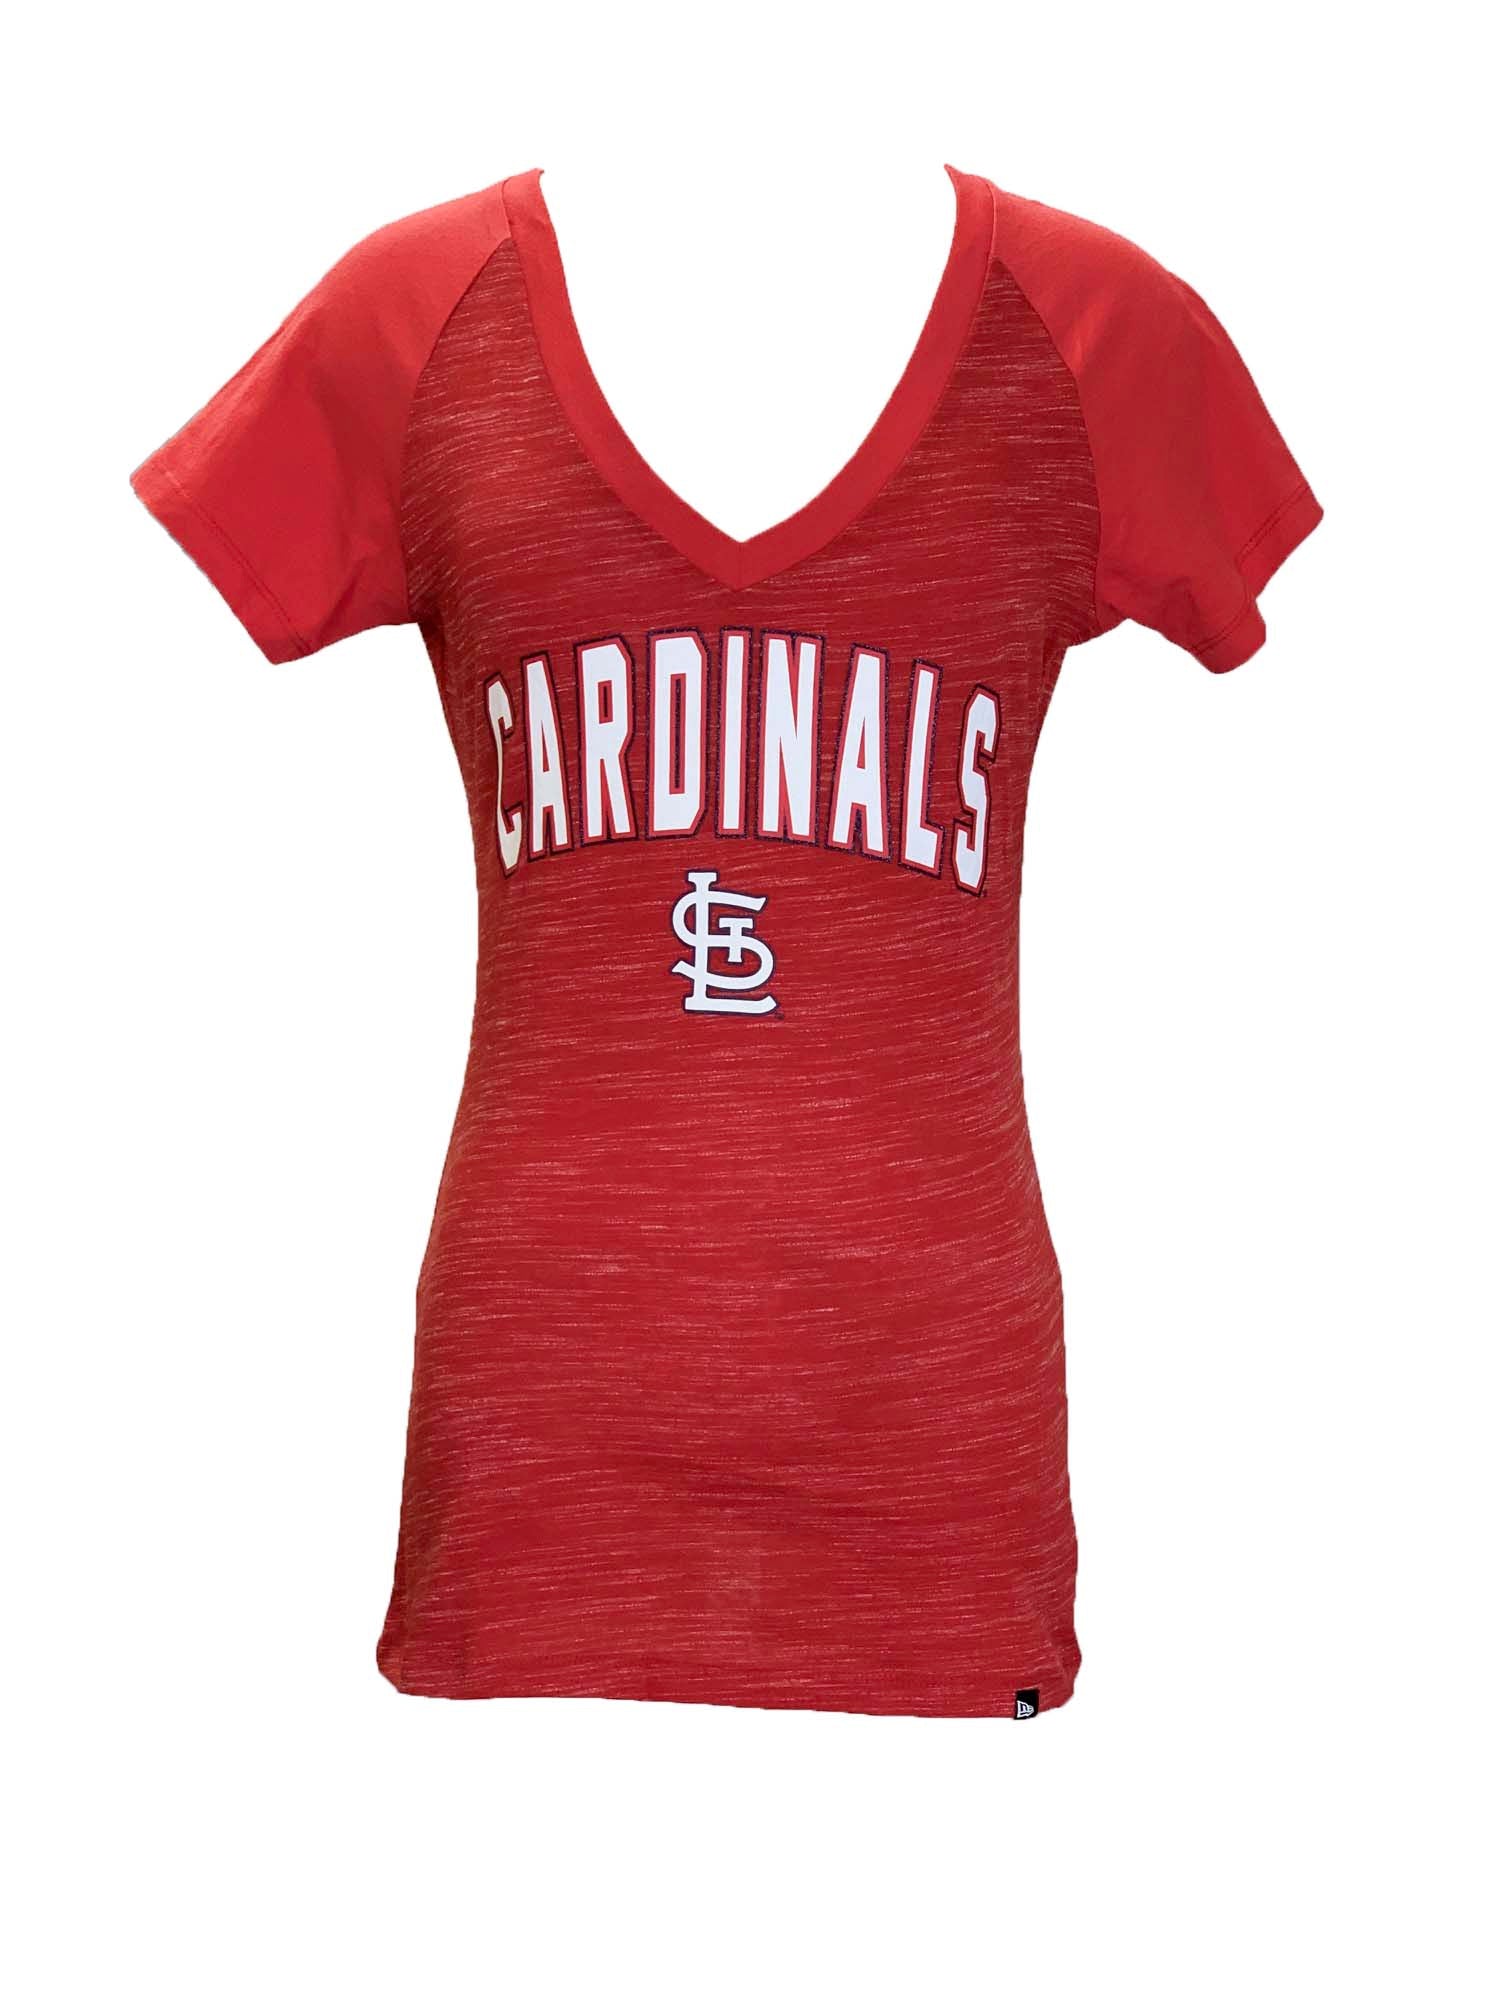 women's stl cardinals shirt